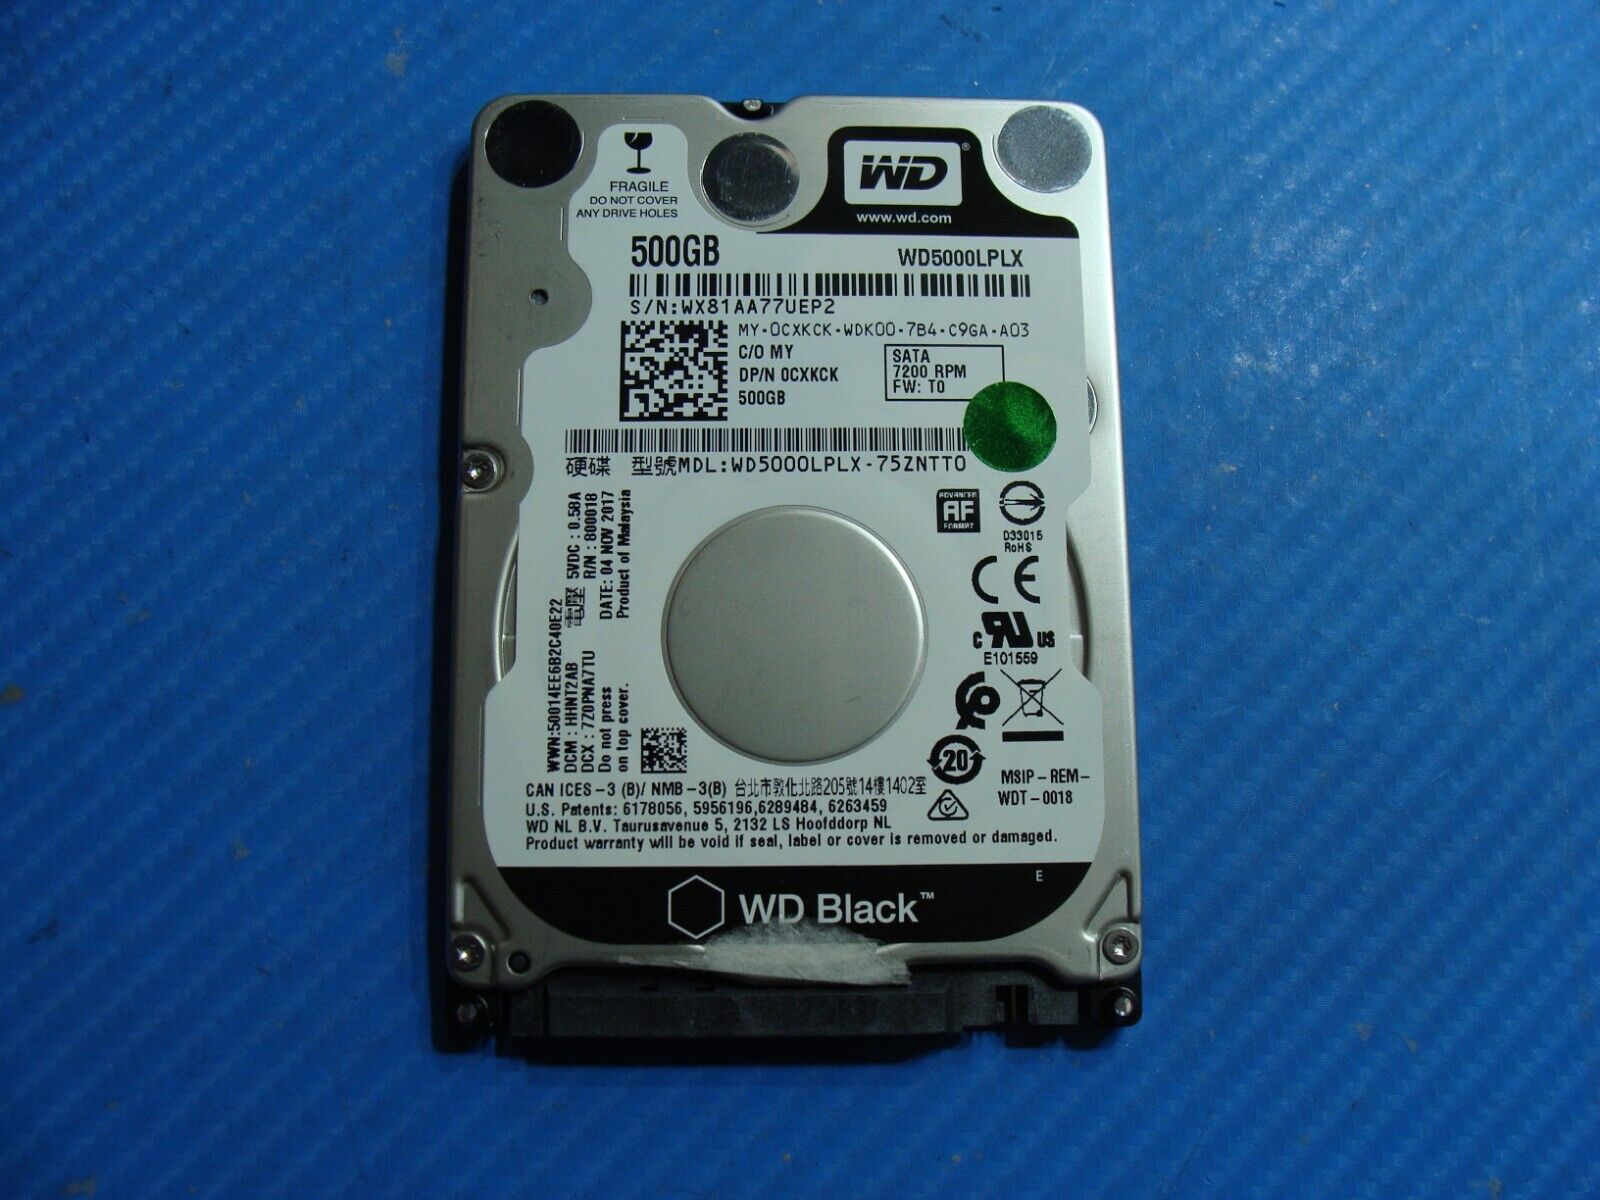 Dell 7520 WD SATA 2.5" 500GB HDD Hard Drive WD5000LPLX-75ZNTT0 CXKCK